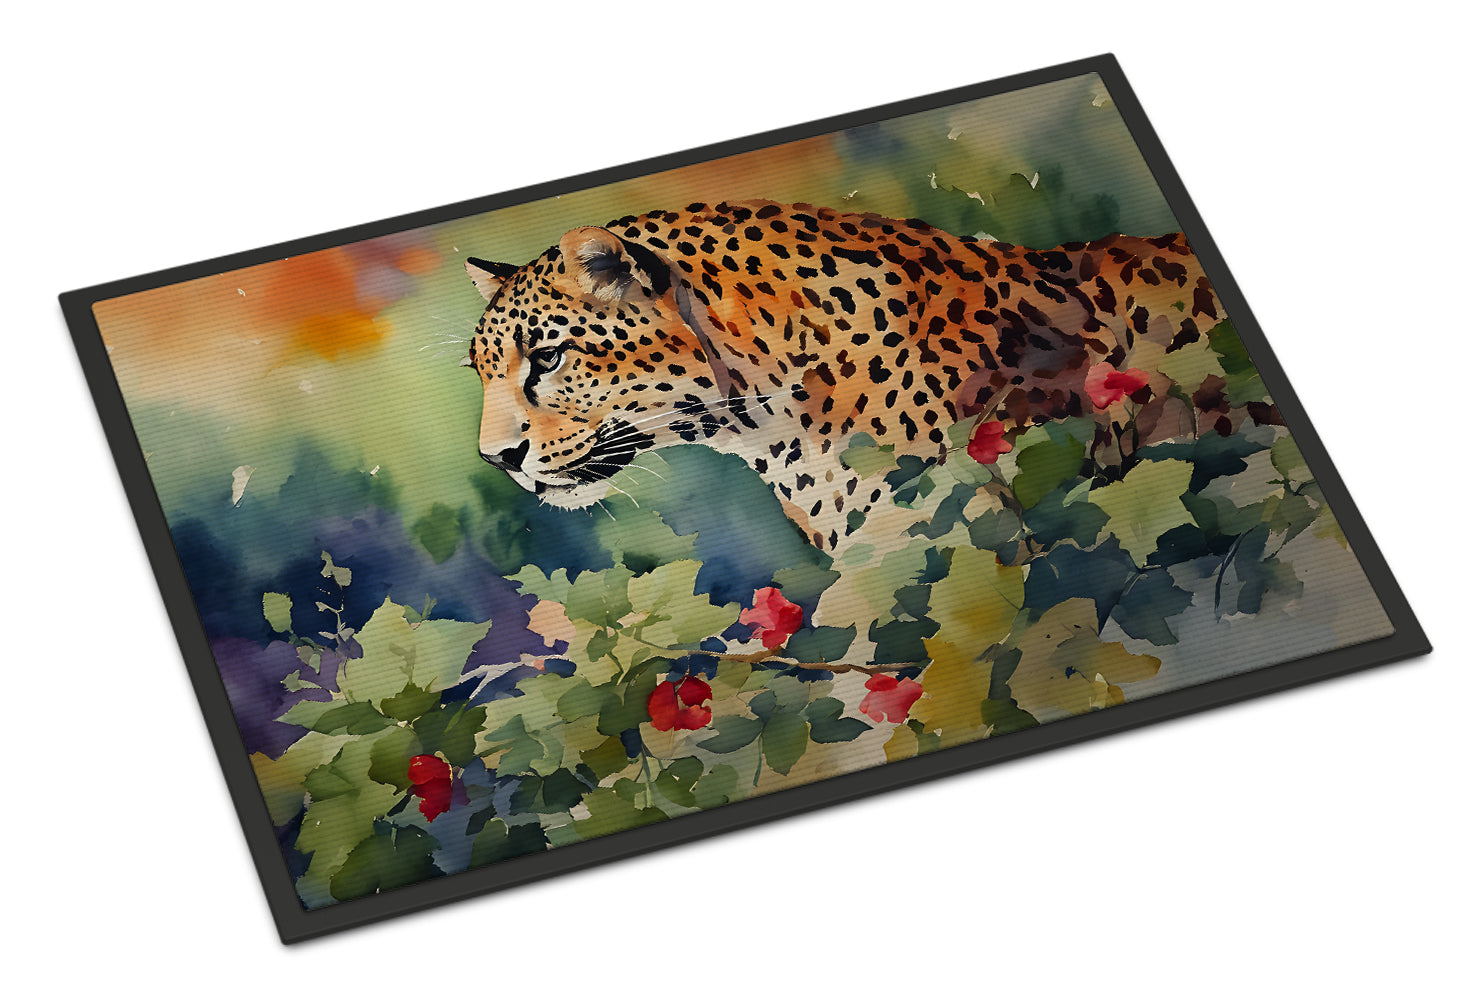 Buy this Leopard Doormat